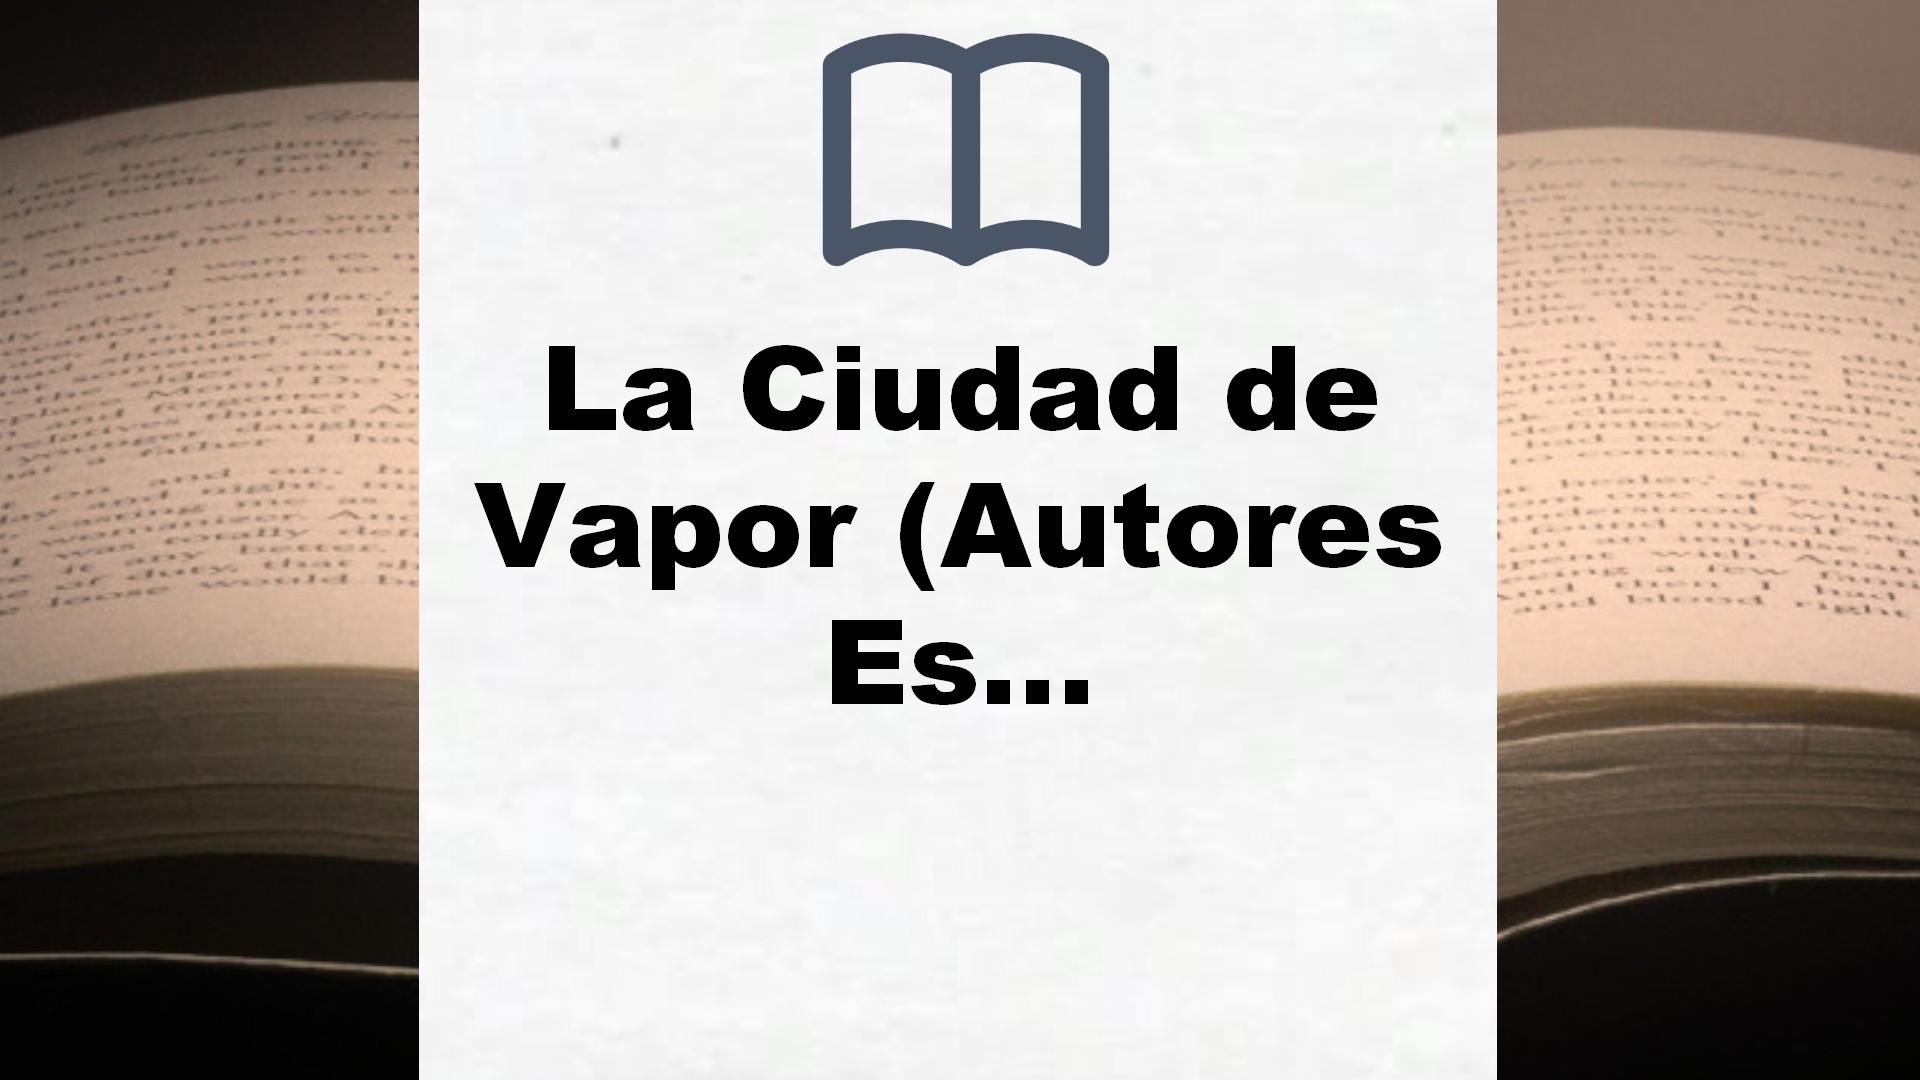 La Ciudad de Vapor (Autores Españoles e Iberoamericanos) – Reseña del libro